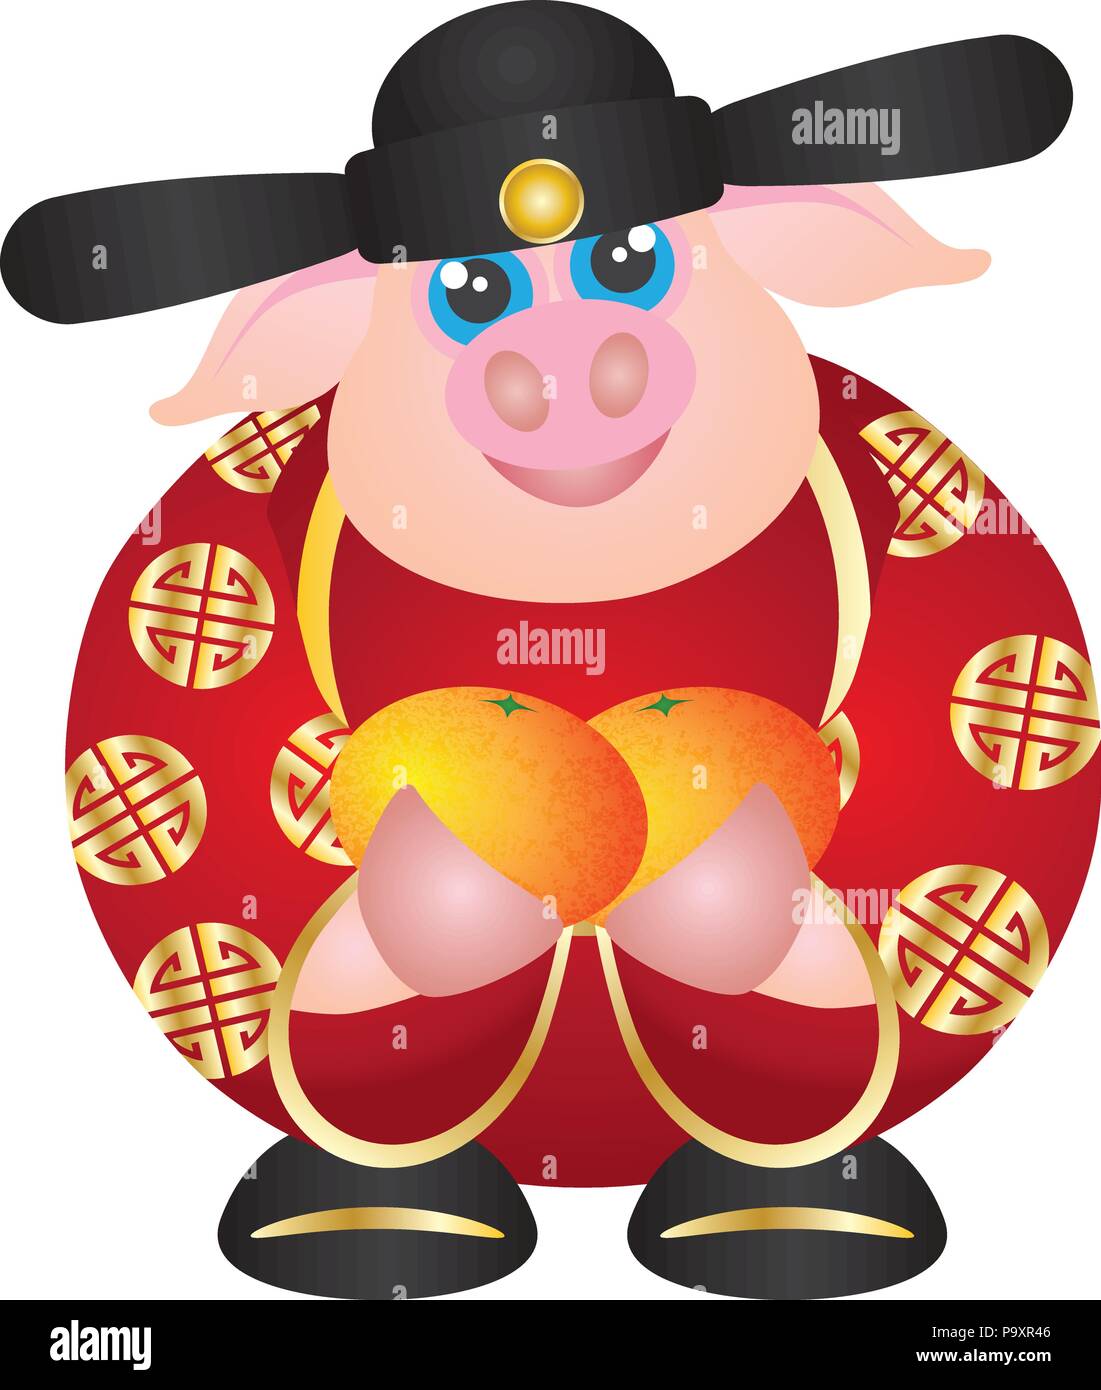 2019 Felice nuovo anno lunare cinese del maiale prosperità dio denaro azienda mandarini arance illustrazione isolati su sfondo bianco Illustrazione Vettoriale